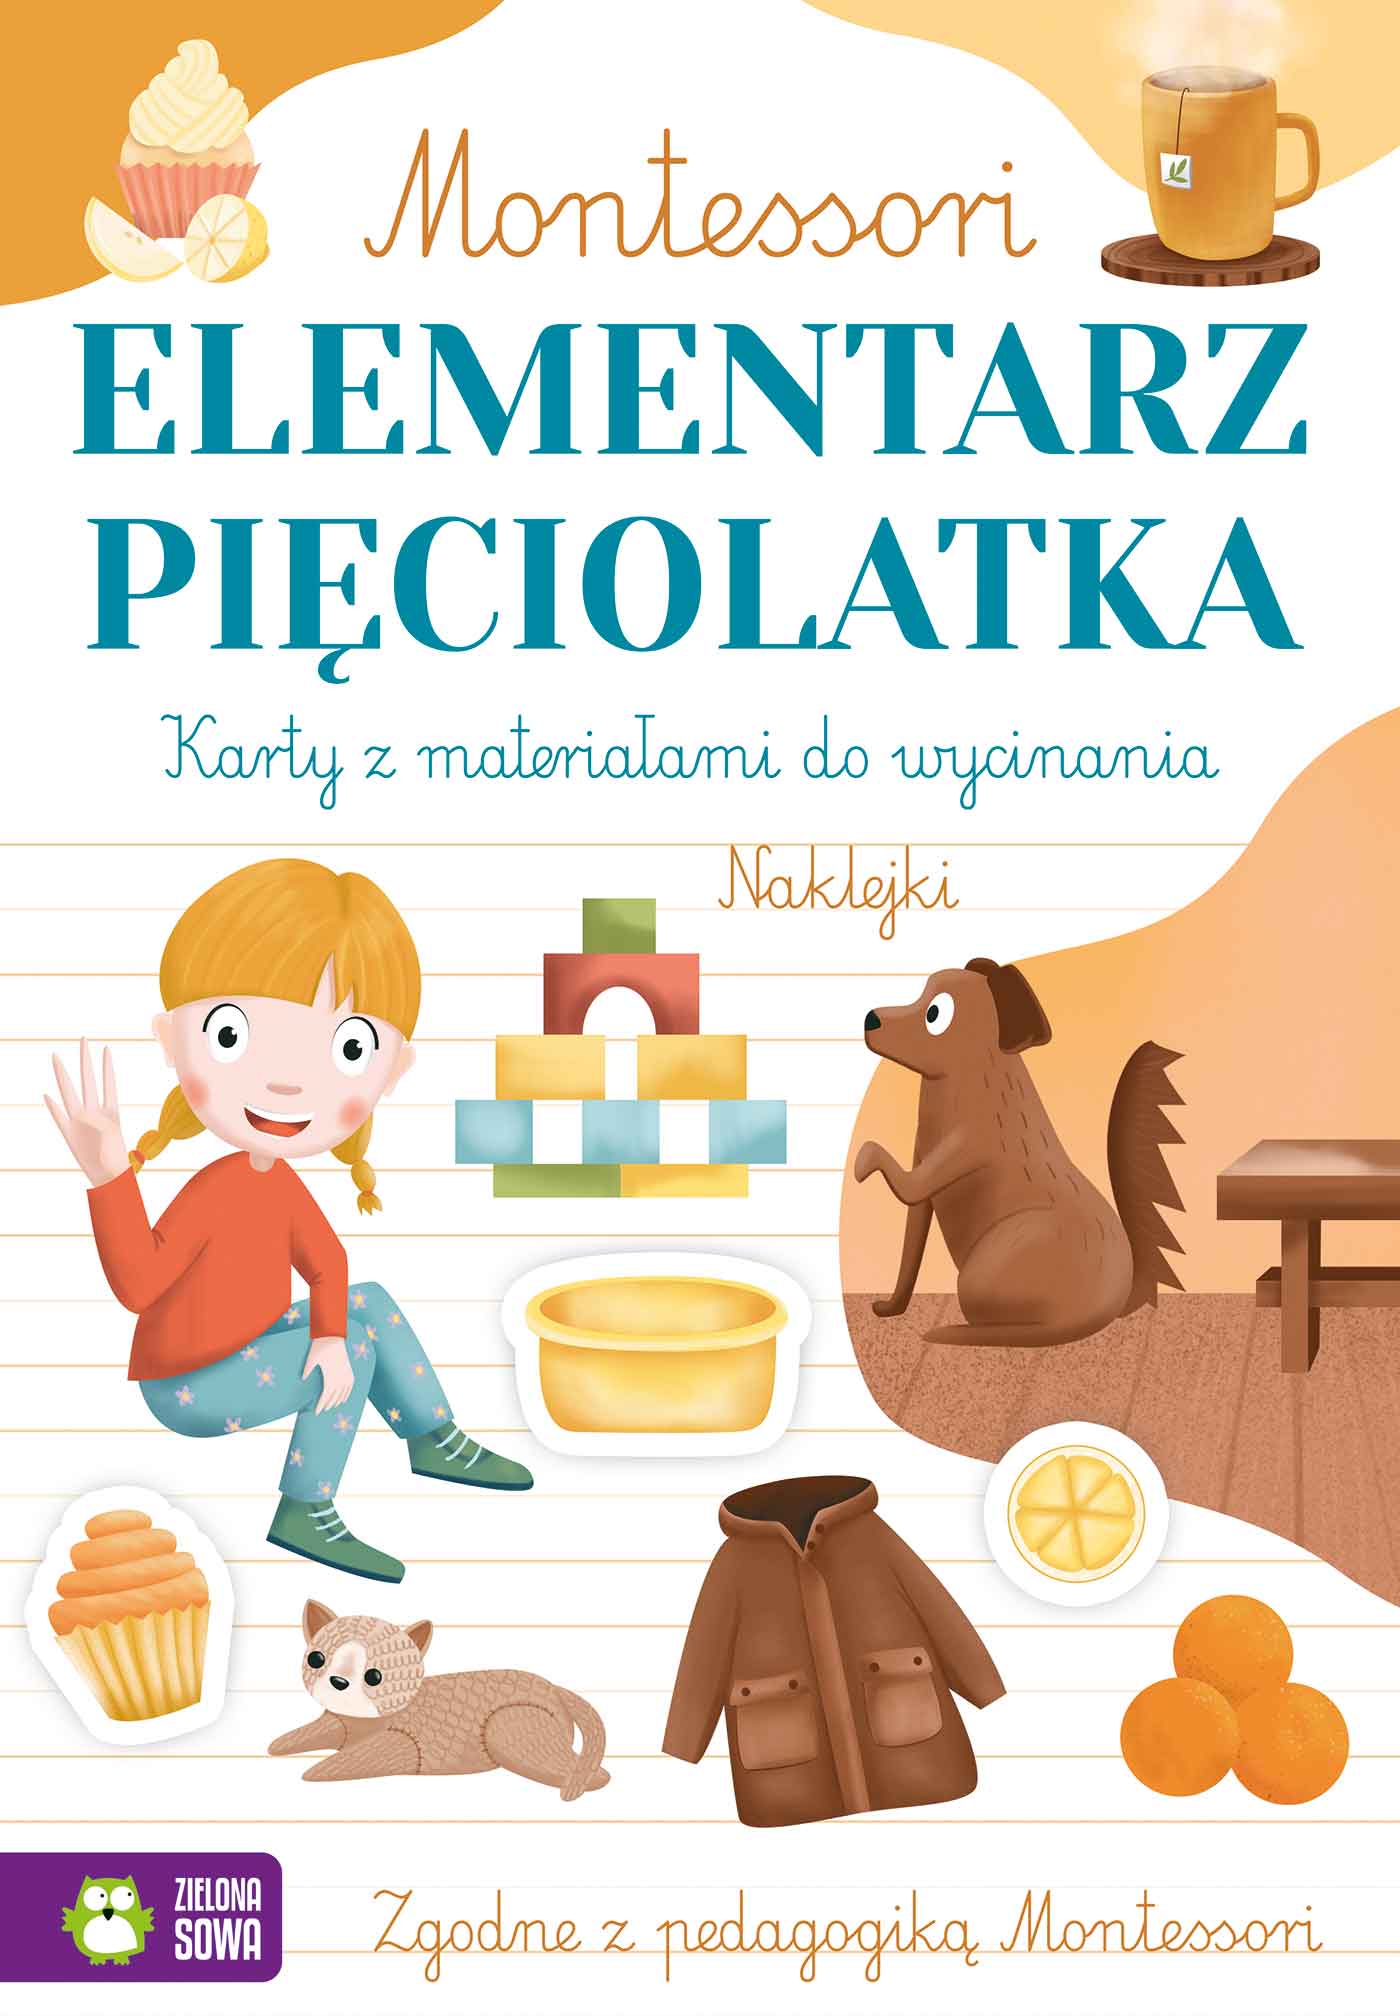 Kniha Elementarz pięciolatka. Montessori Zuzanna Osuchowska